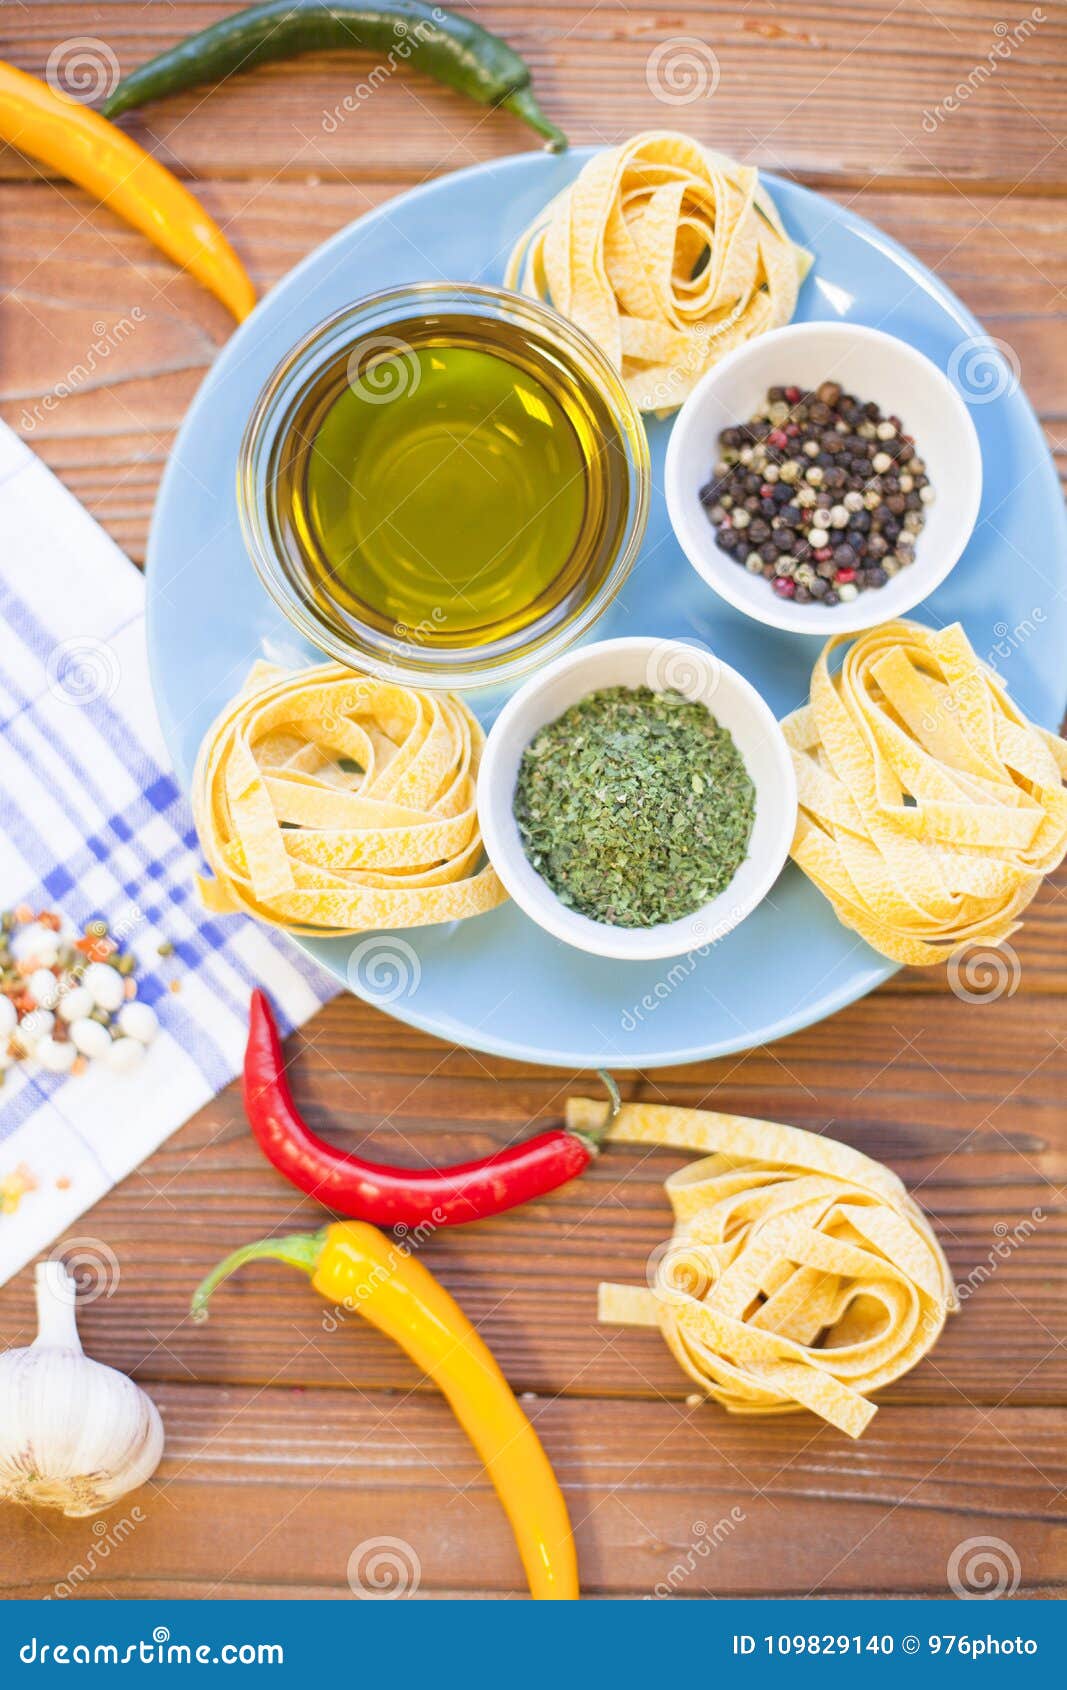 烹调在一张木桌上的成份. 有橄榄油、香料、草本和fetuccini巢的在一块蓝色板材，蕃茄，大蒜，在一张木桌上的辣椒碗与一块白色餐巾，顶视图